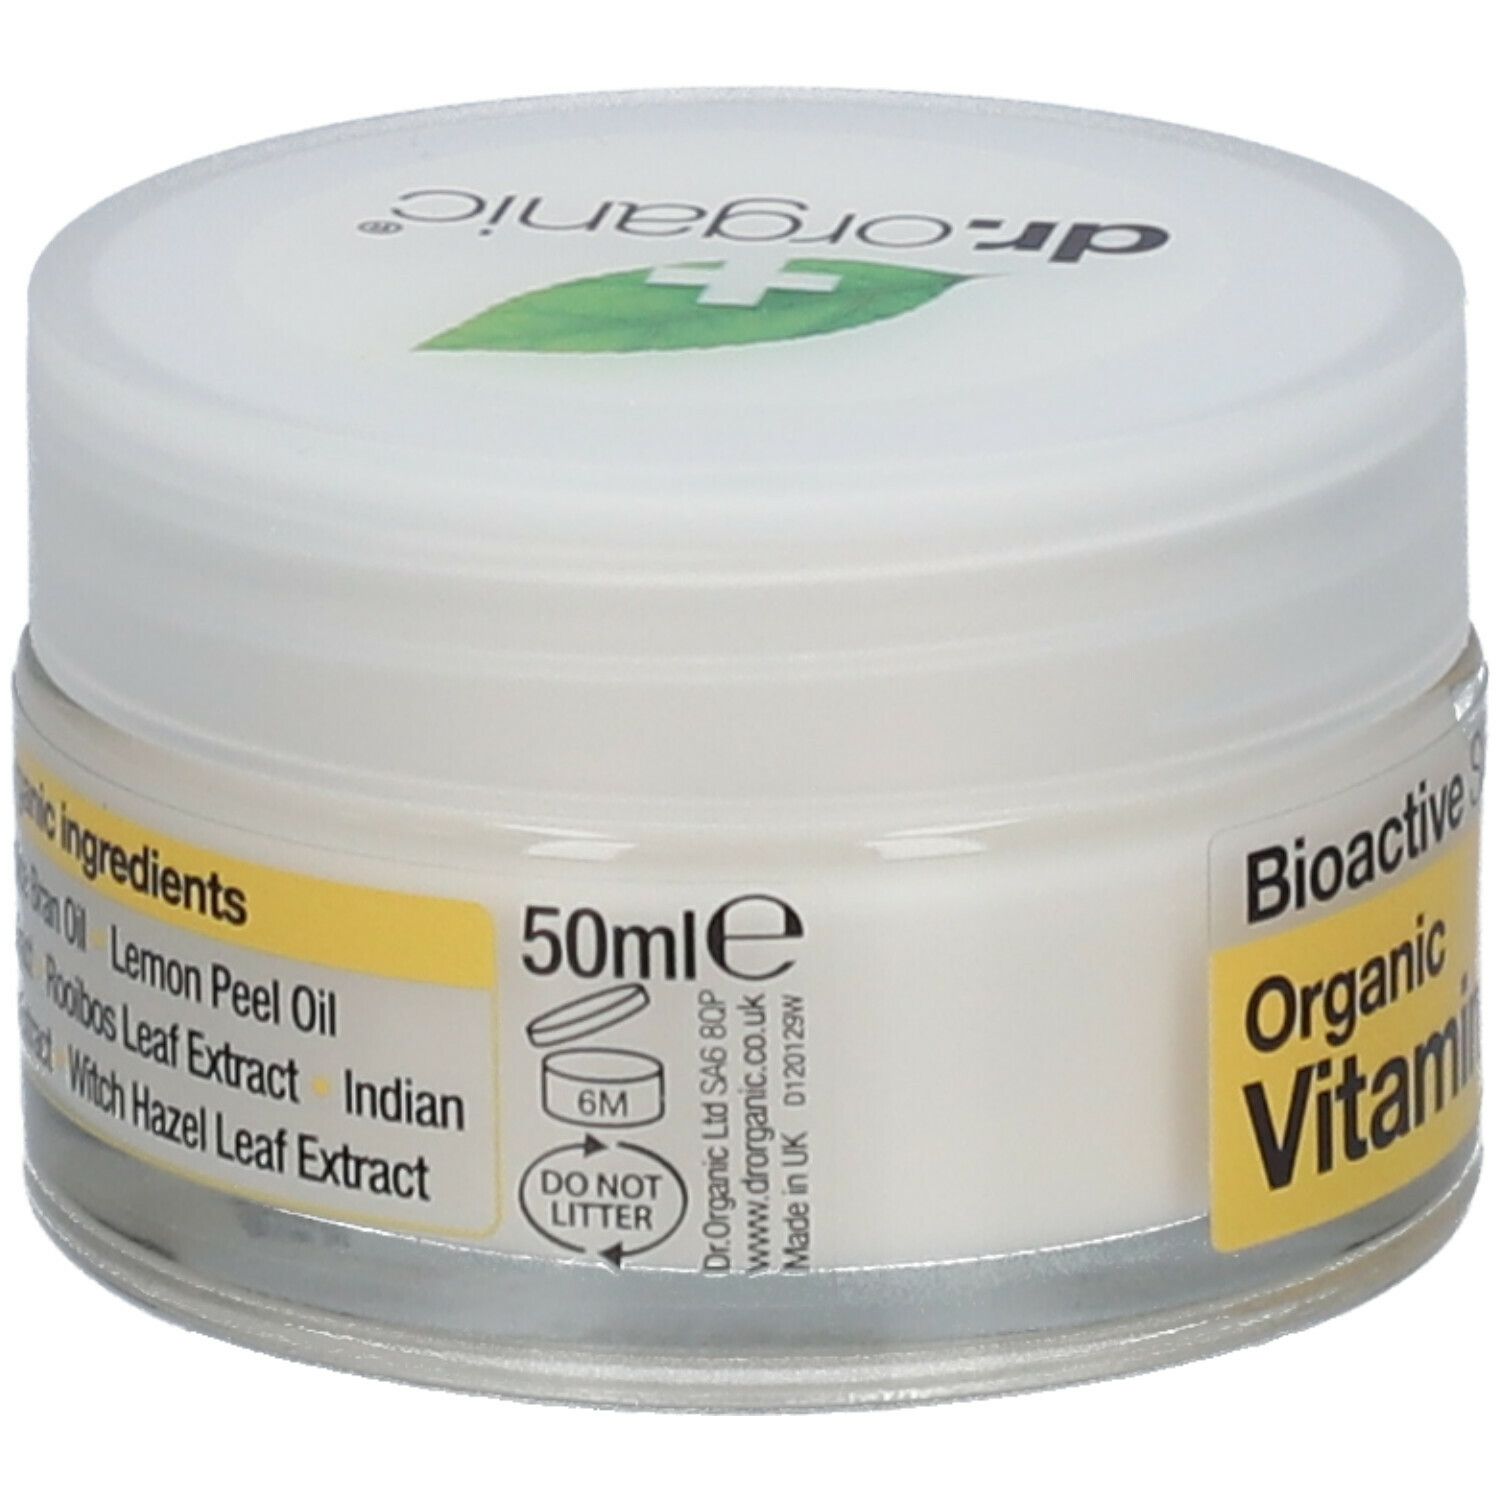 Dr. Organic® Vitamin E Cream